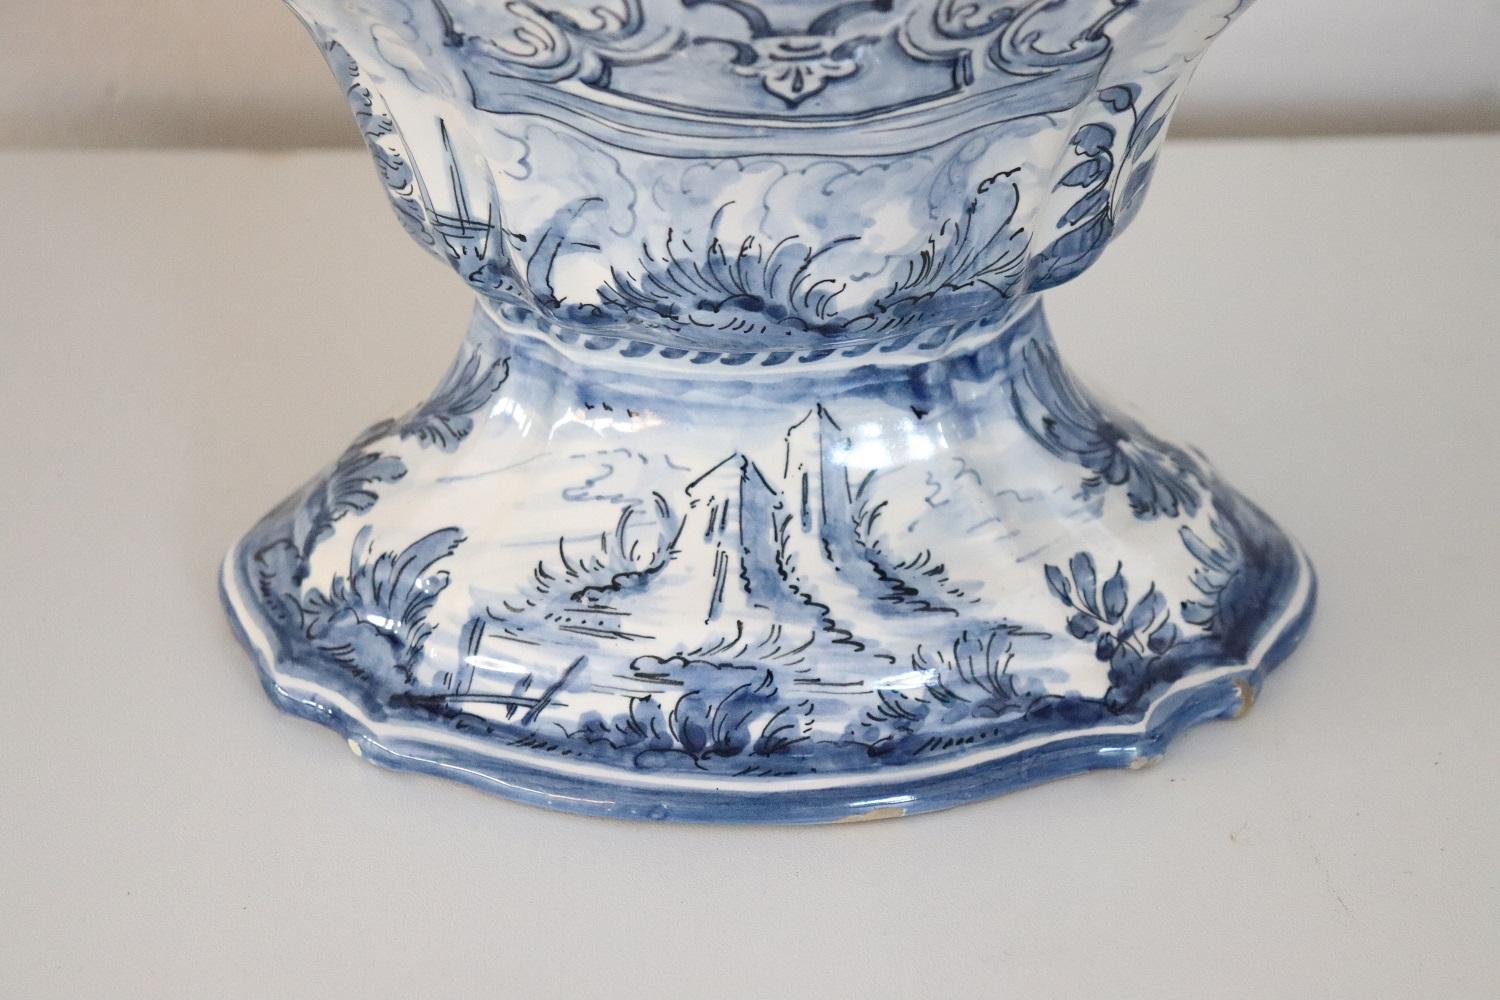 20th Century Italian Albisola Ceramic Vase with Blue Decorations by Alba Docilia In Good Condition For Sale In Casale Monferrato, IT